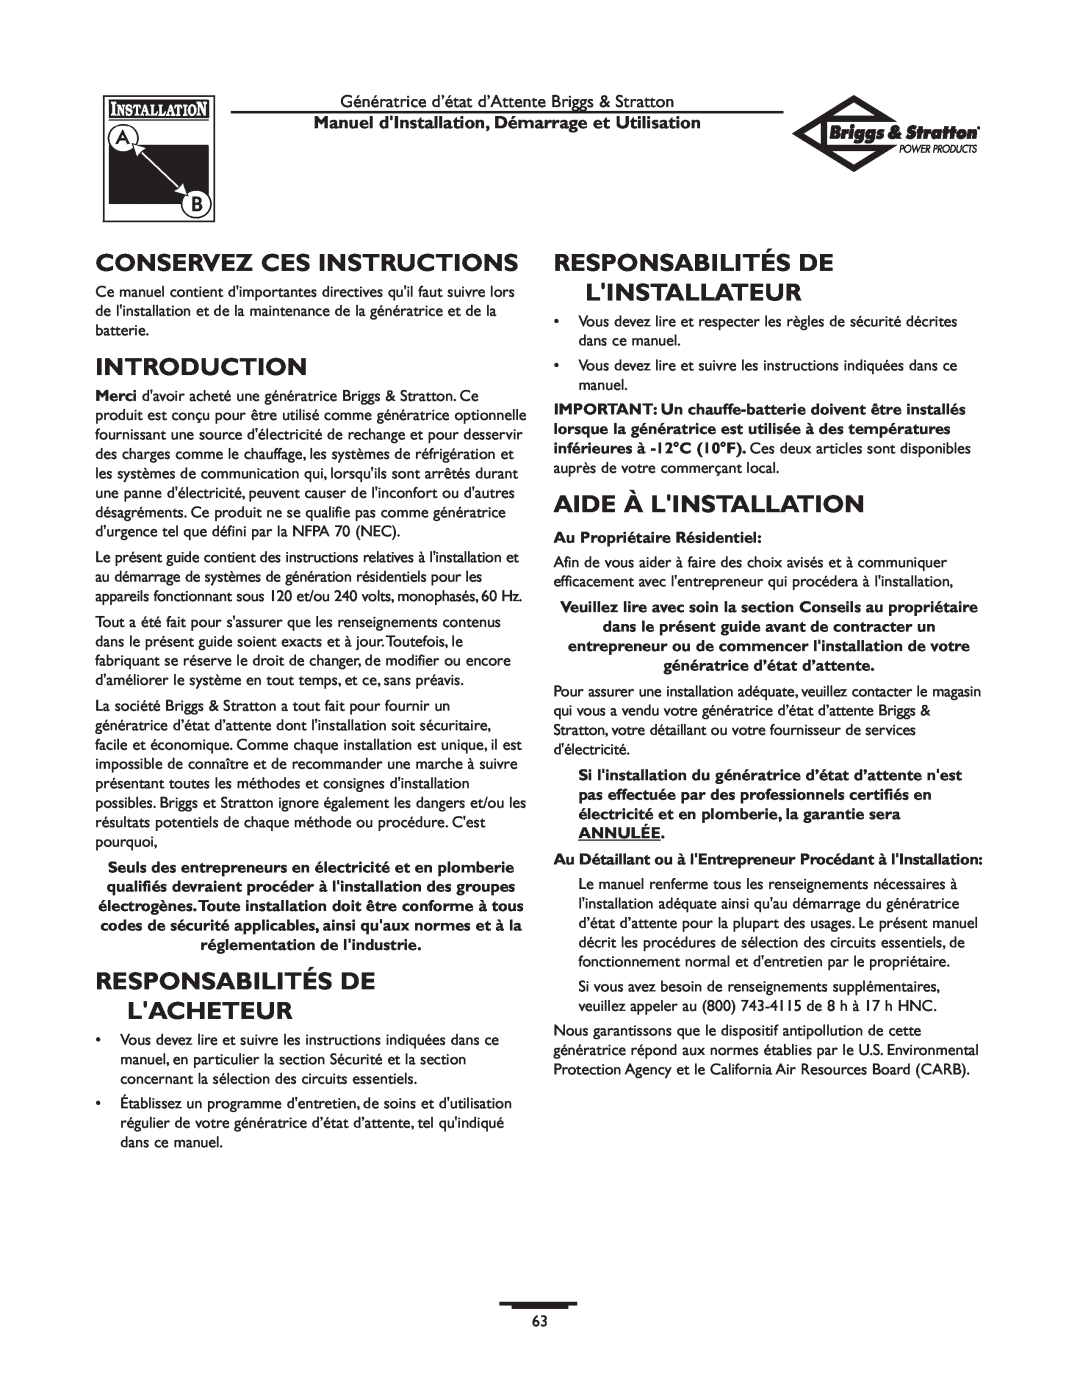 Briggs & Stratton 01897-0 Conservez Ces Instructions, Introduction, Responsabilités De Linstallateur, Aide À Linstallation 